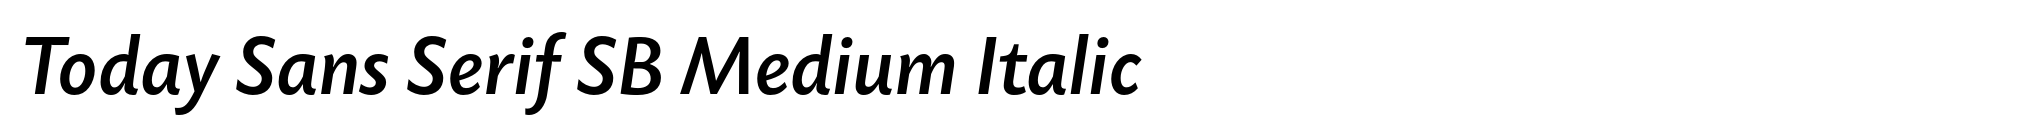 Today Sans Serif SB Medium Italic image